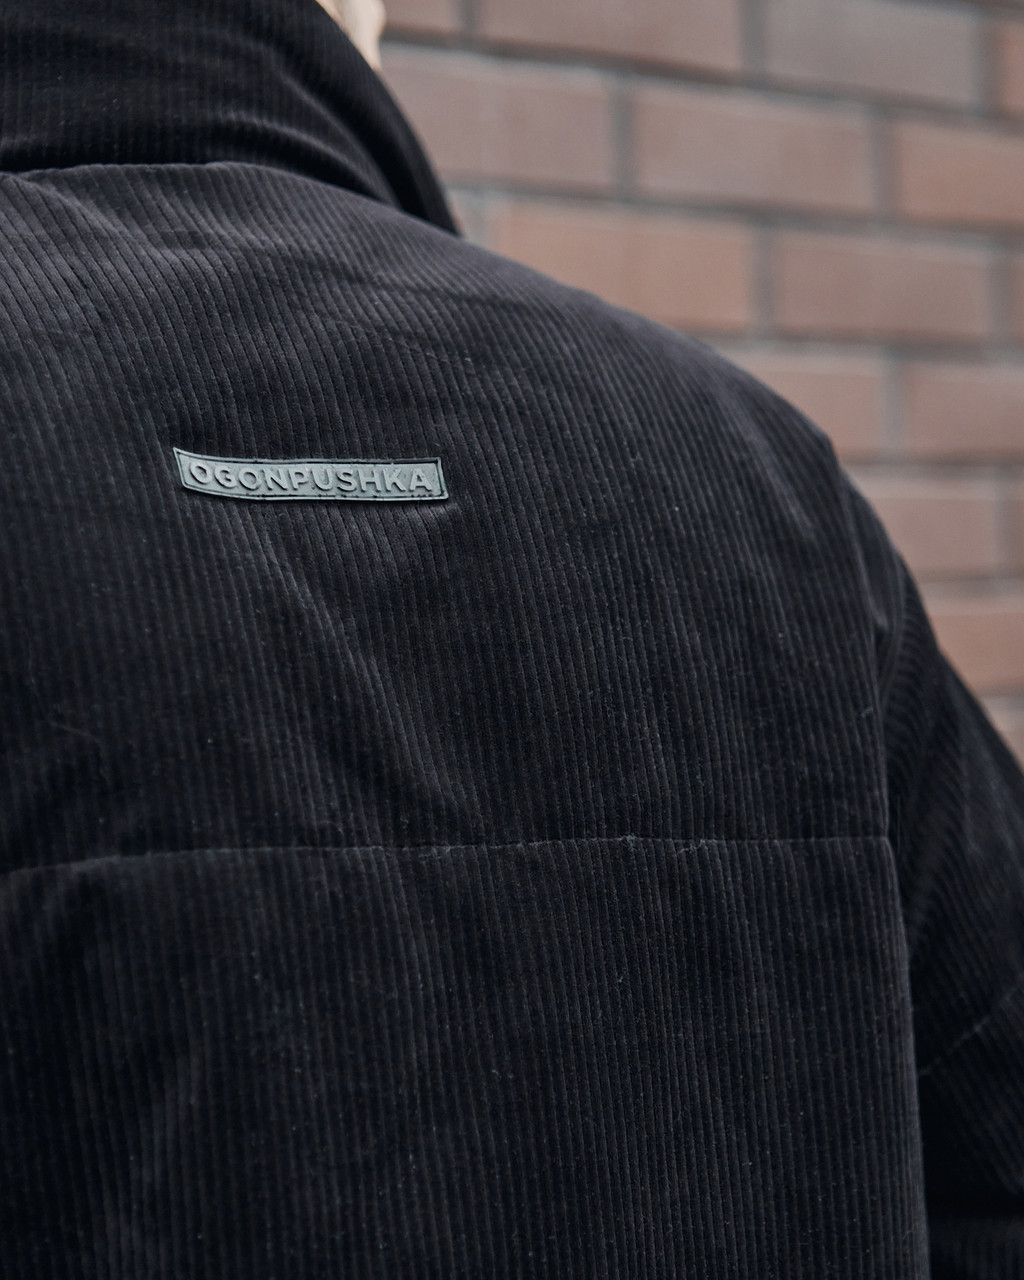 Куртка демисезонная мужская OGONPUSHKA Yard вельветовая черная Пушка Огонь - Фото 7